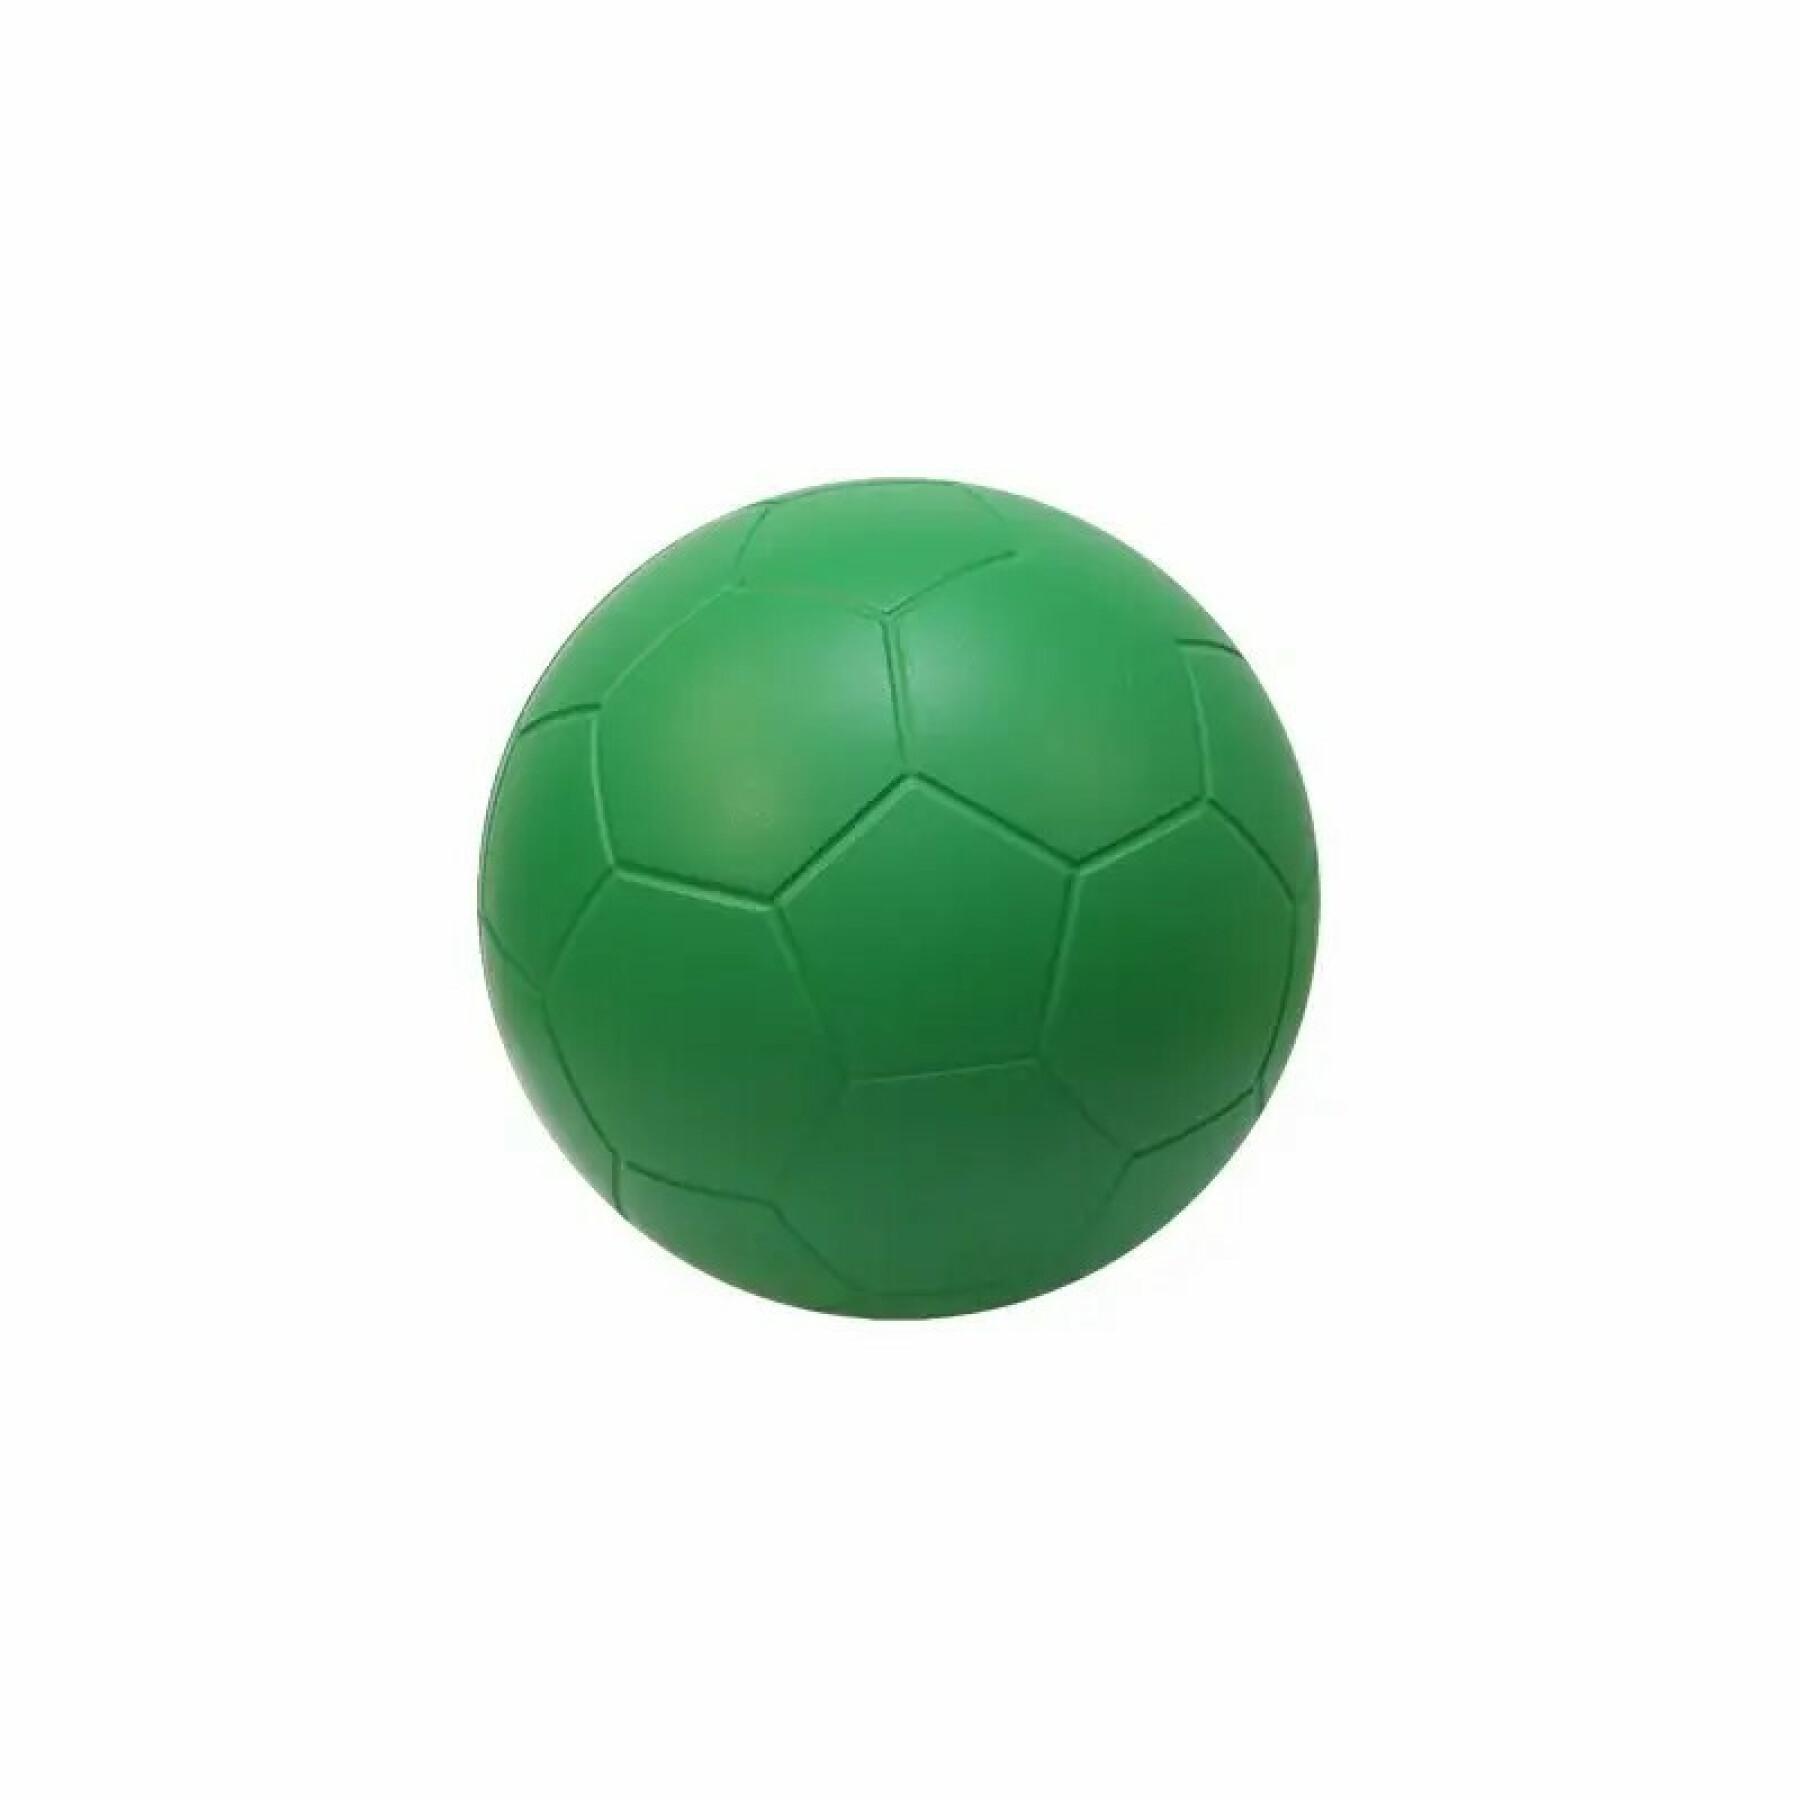 Schaumstoffball Softee 160 mm